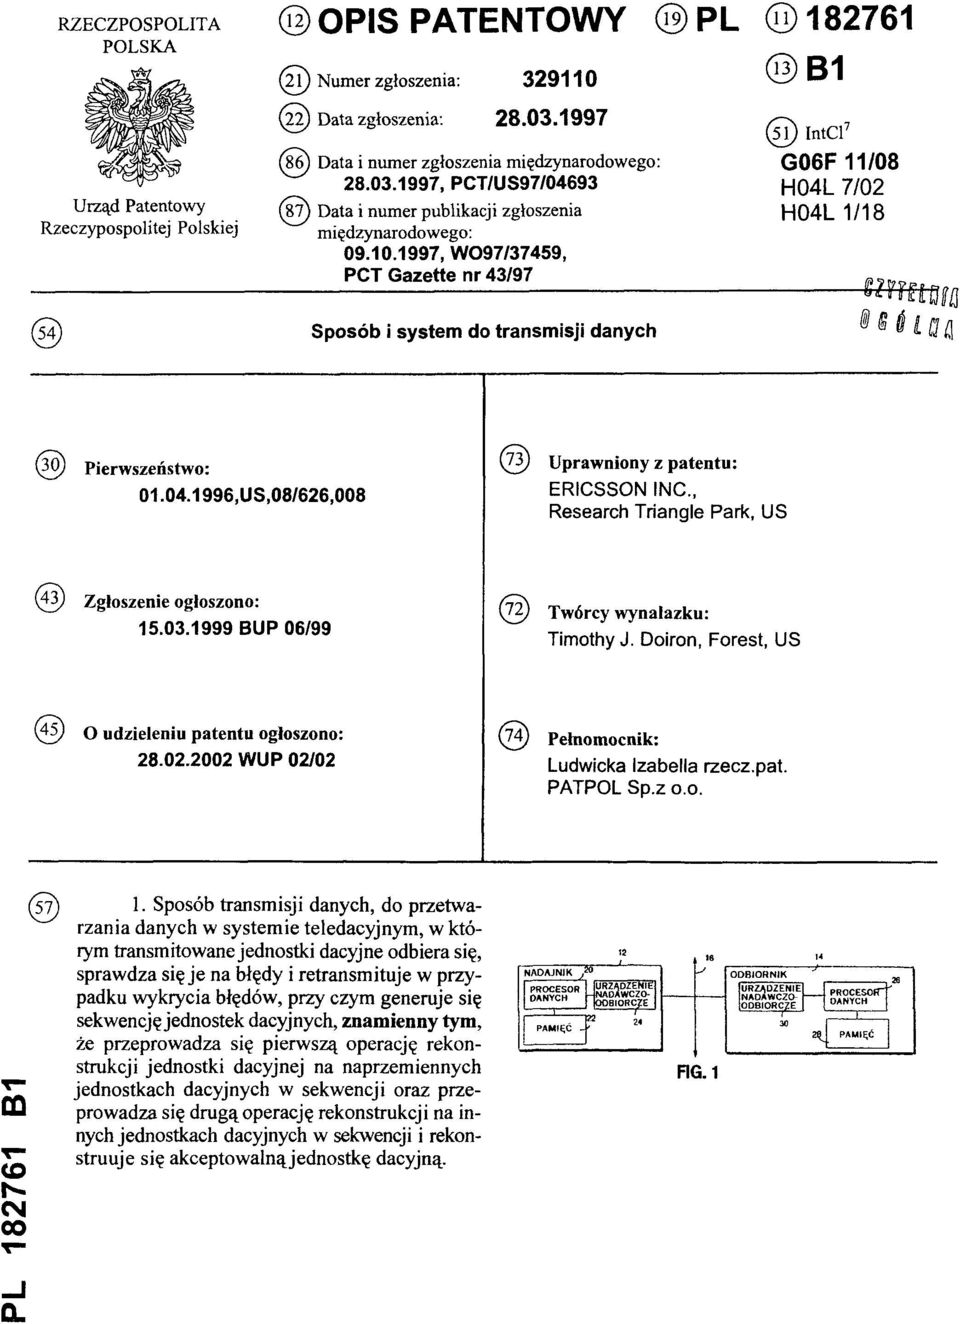 1997, WO97/37459, PCT Gazette nr 43/97 (51) IntCl7 G06F 11/08 H04L 7/02 H04L 1/18 (54) Sposób i system do transmisji danych (30) Pierwszeństwo: 01.04.1996,US,08/626,008 (73) Uprawniony z patentu: ERICSSON INC.